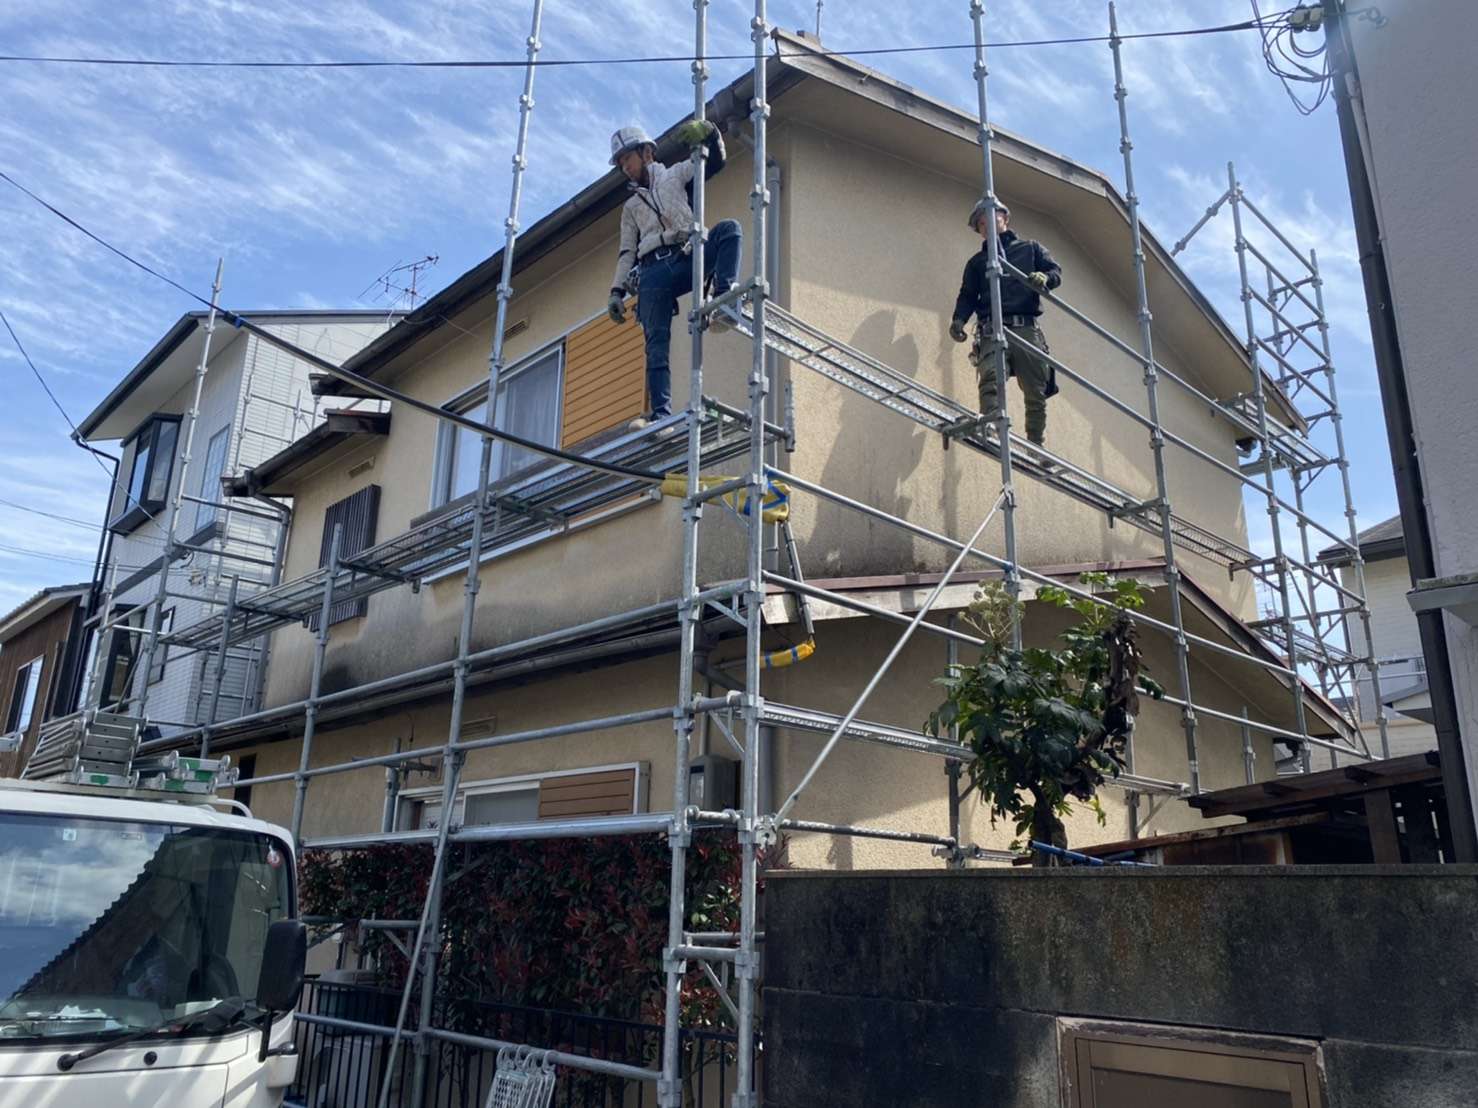 京都府で外壁塗装の足場組立作業 京都エリアへ外壁塗装事業を運営する株式会社banbaがブログで情報発信をしています